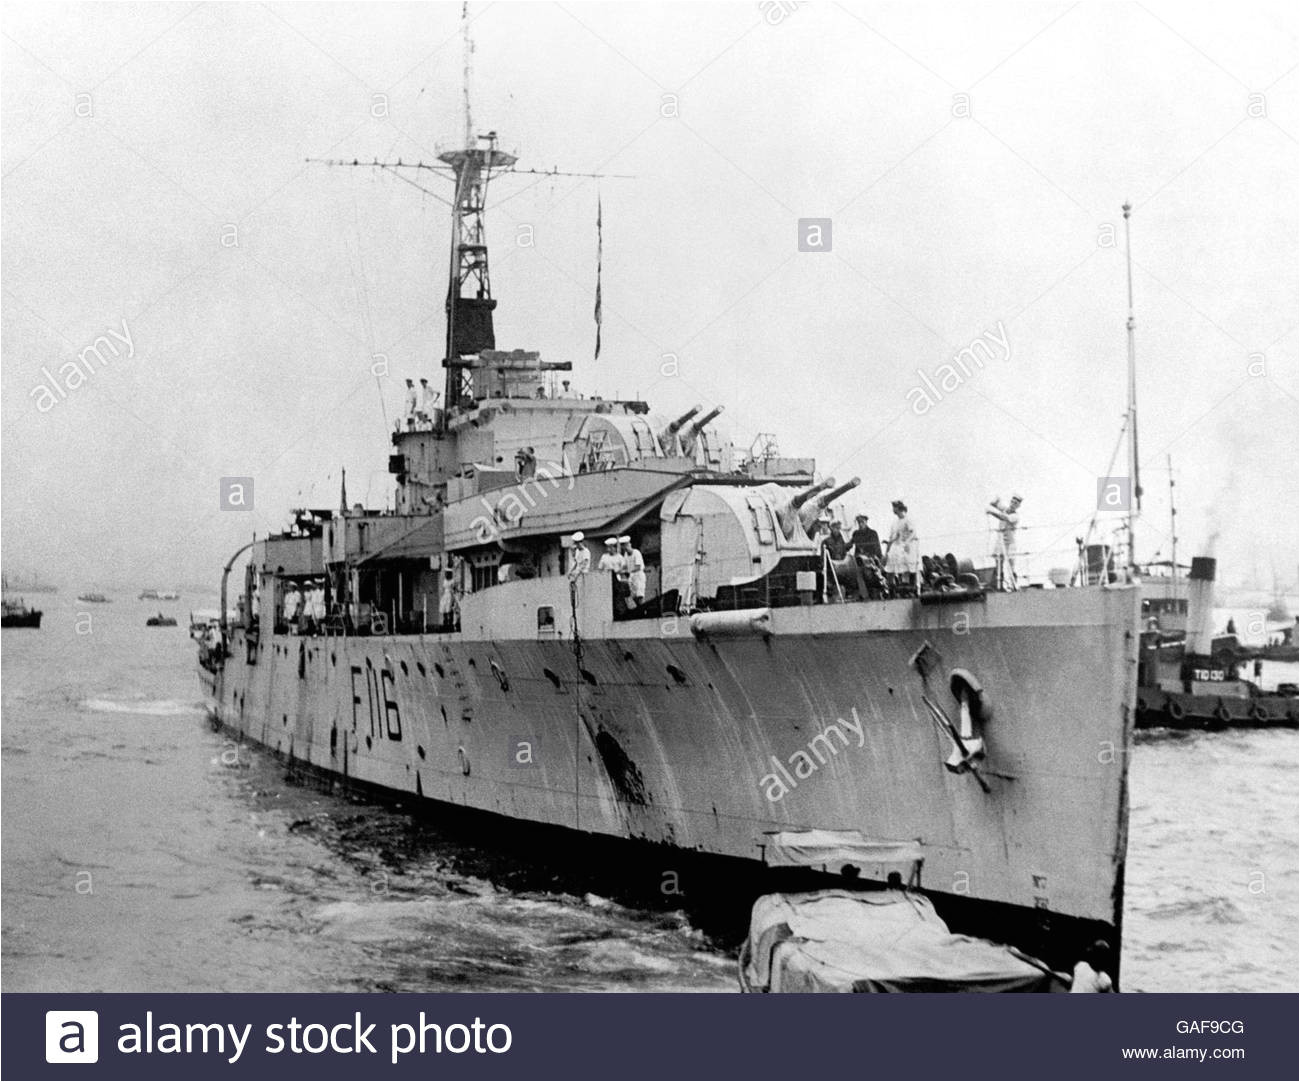 uk armed forces the royal navy hms amethyst hong kong 1949